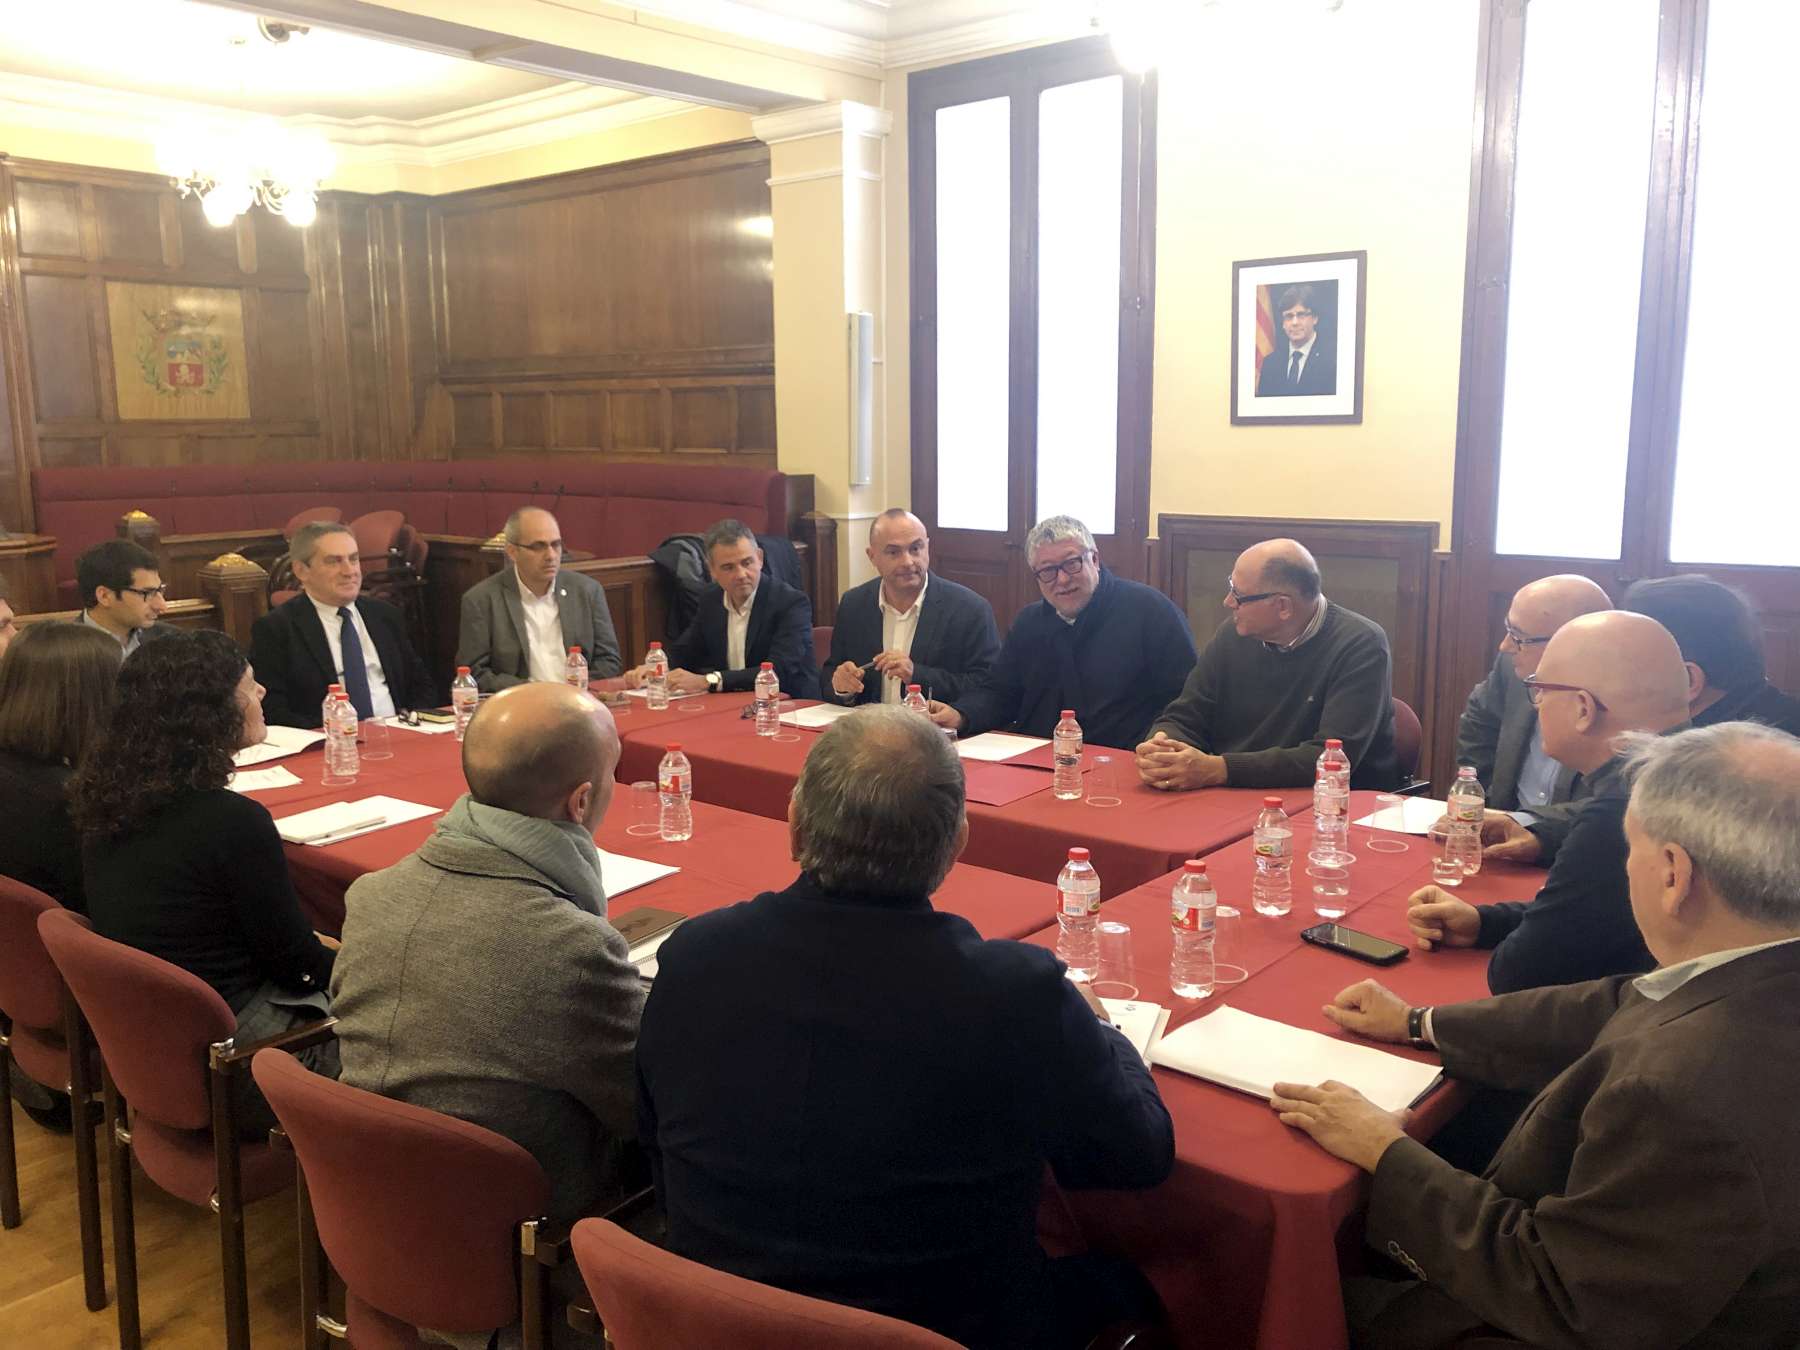 El dijous, 20 de desembre, ha quedat constituït el Consorci per a la promoció d'habitatges protegits al Masnou entre l'Àrea Metropolitana de Barcelona (AMB) i l'Ajuntament del Masnou